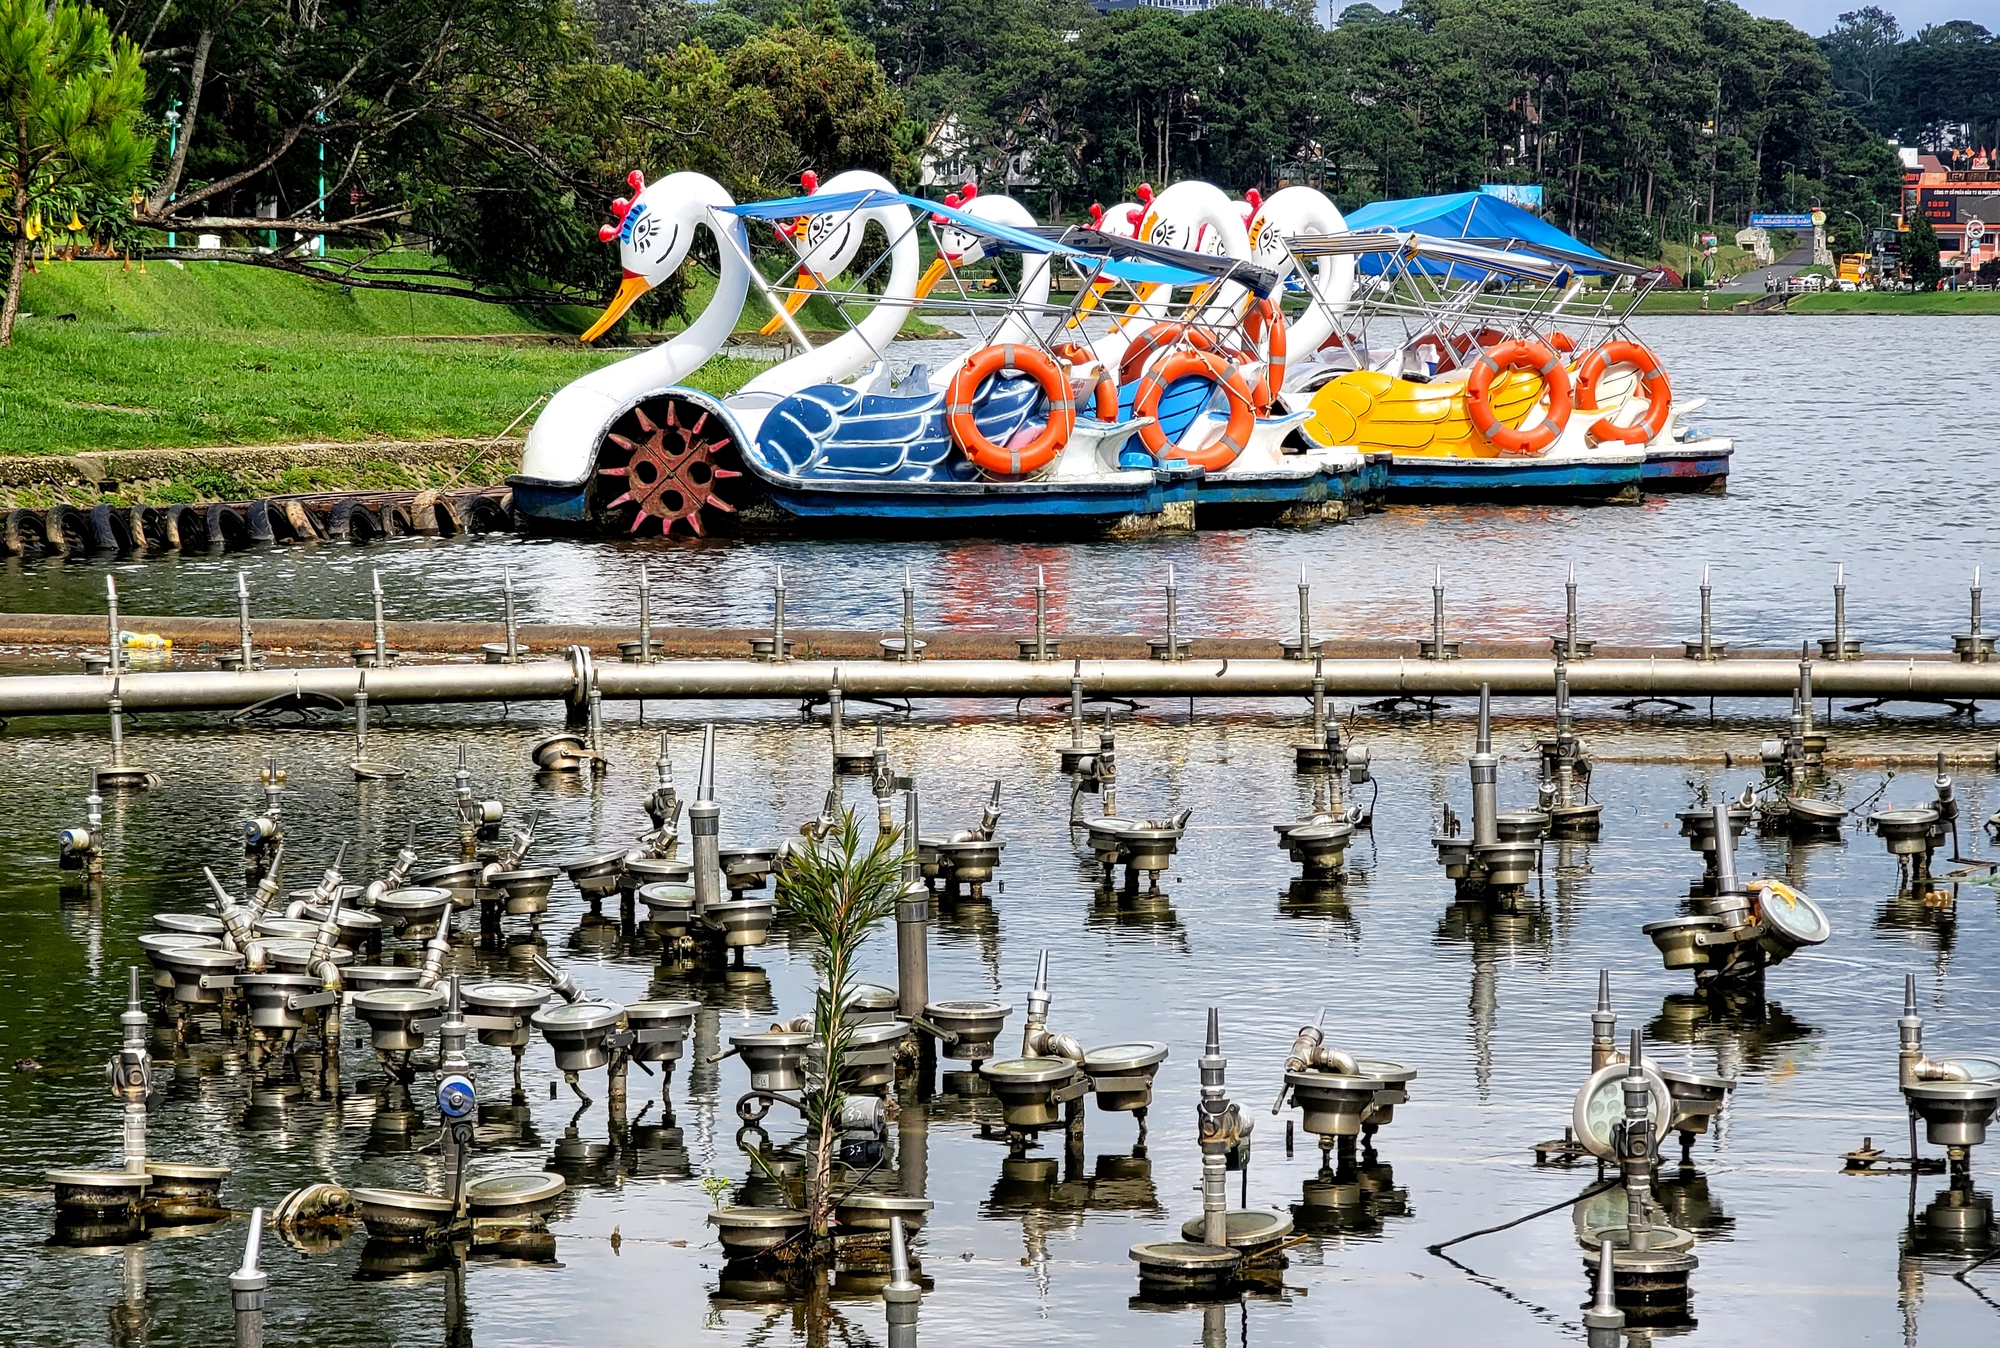 Cận cảnh công trình nhạc nước 10 tỉ đồng đắp chiếu trên hồ Xuân Hương - Ảnh 7.